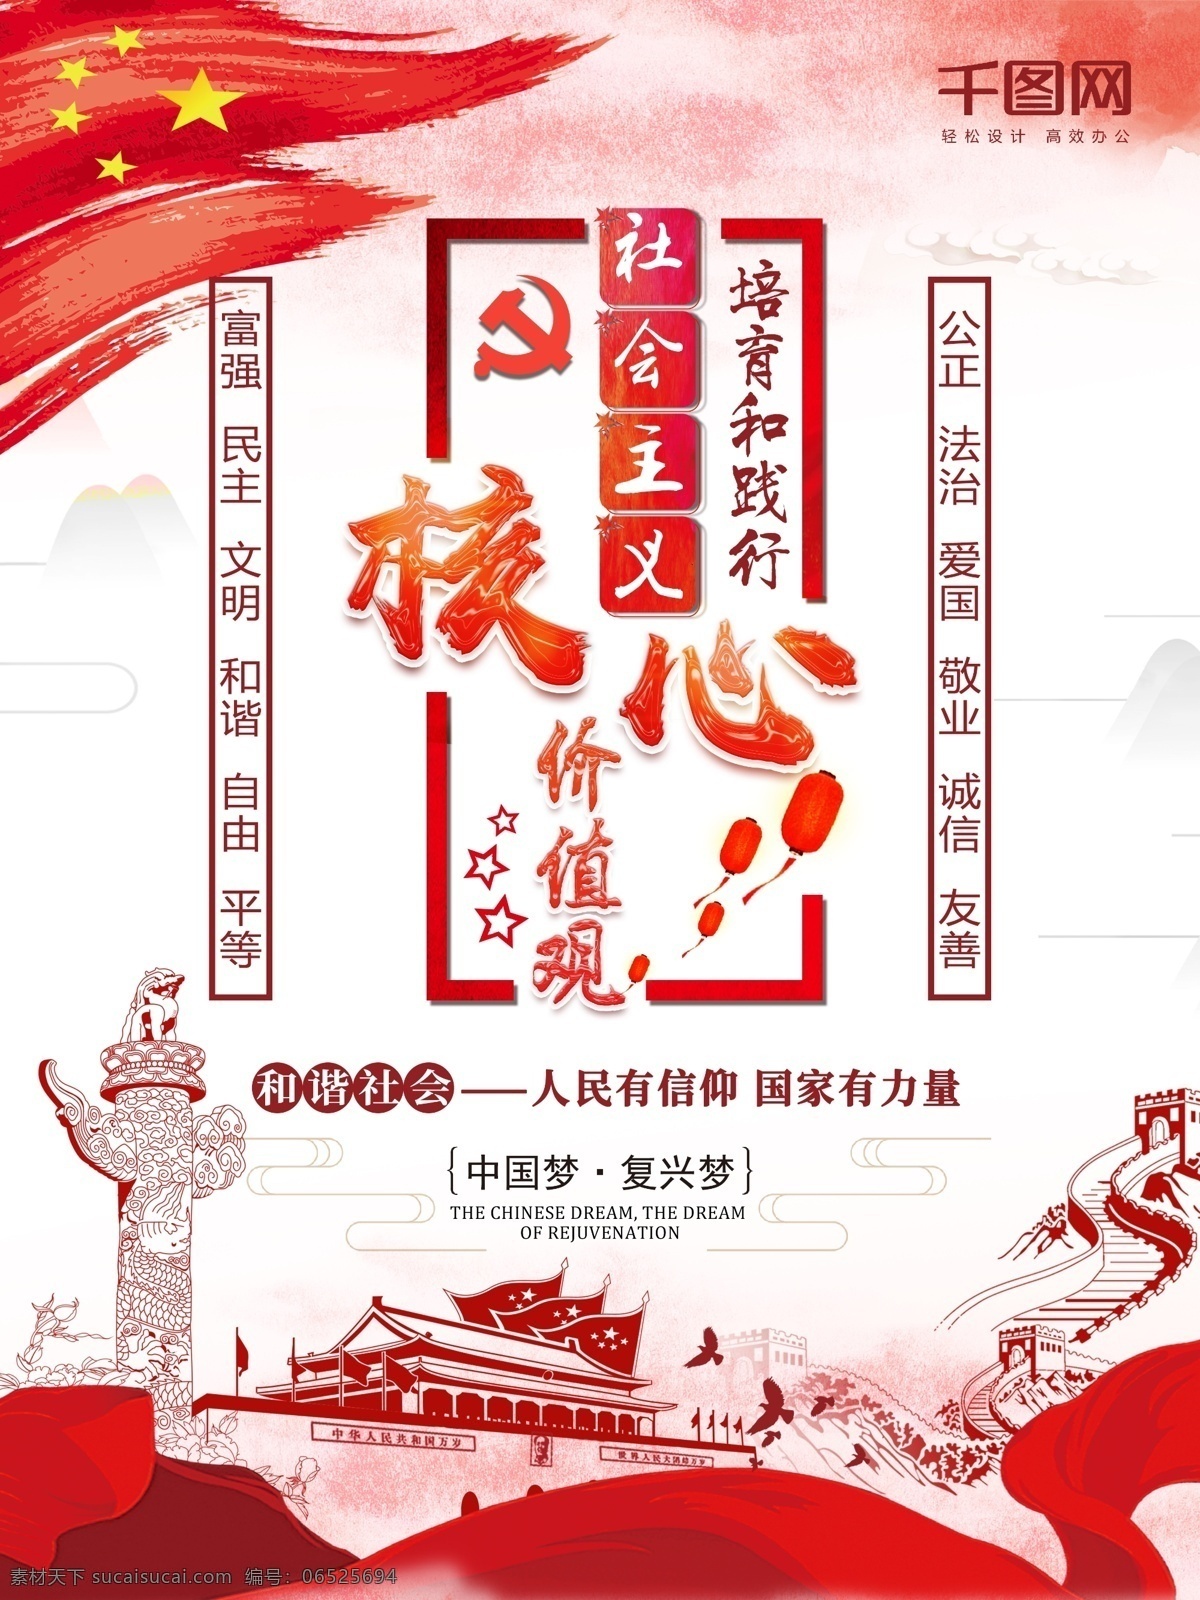 红色 水墨 风 社会主义 核心 价值观 党建 宣传海报 宣传 水墨风 海报